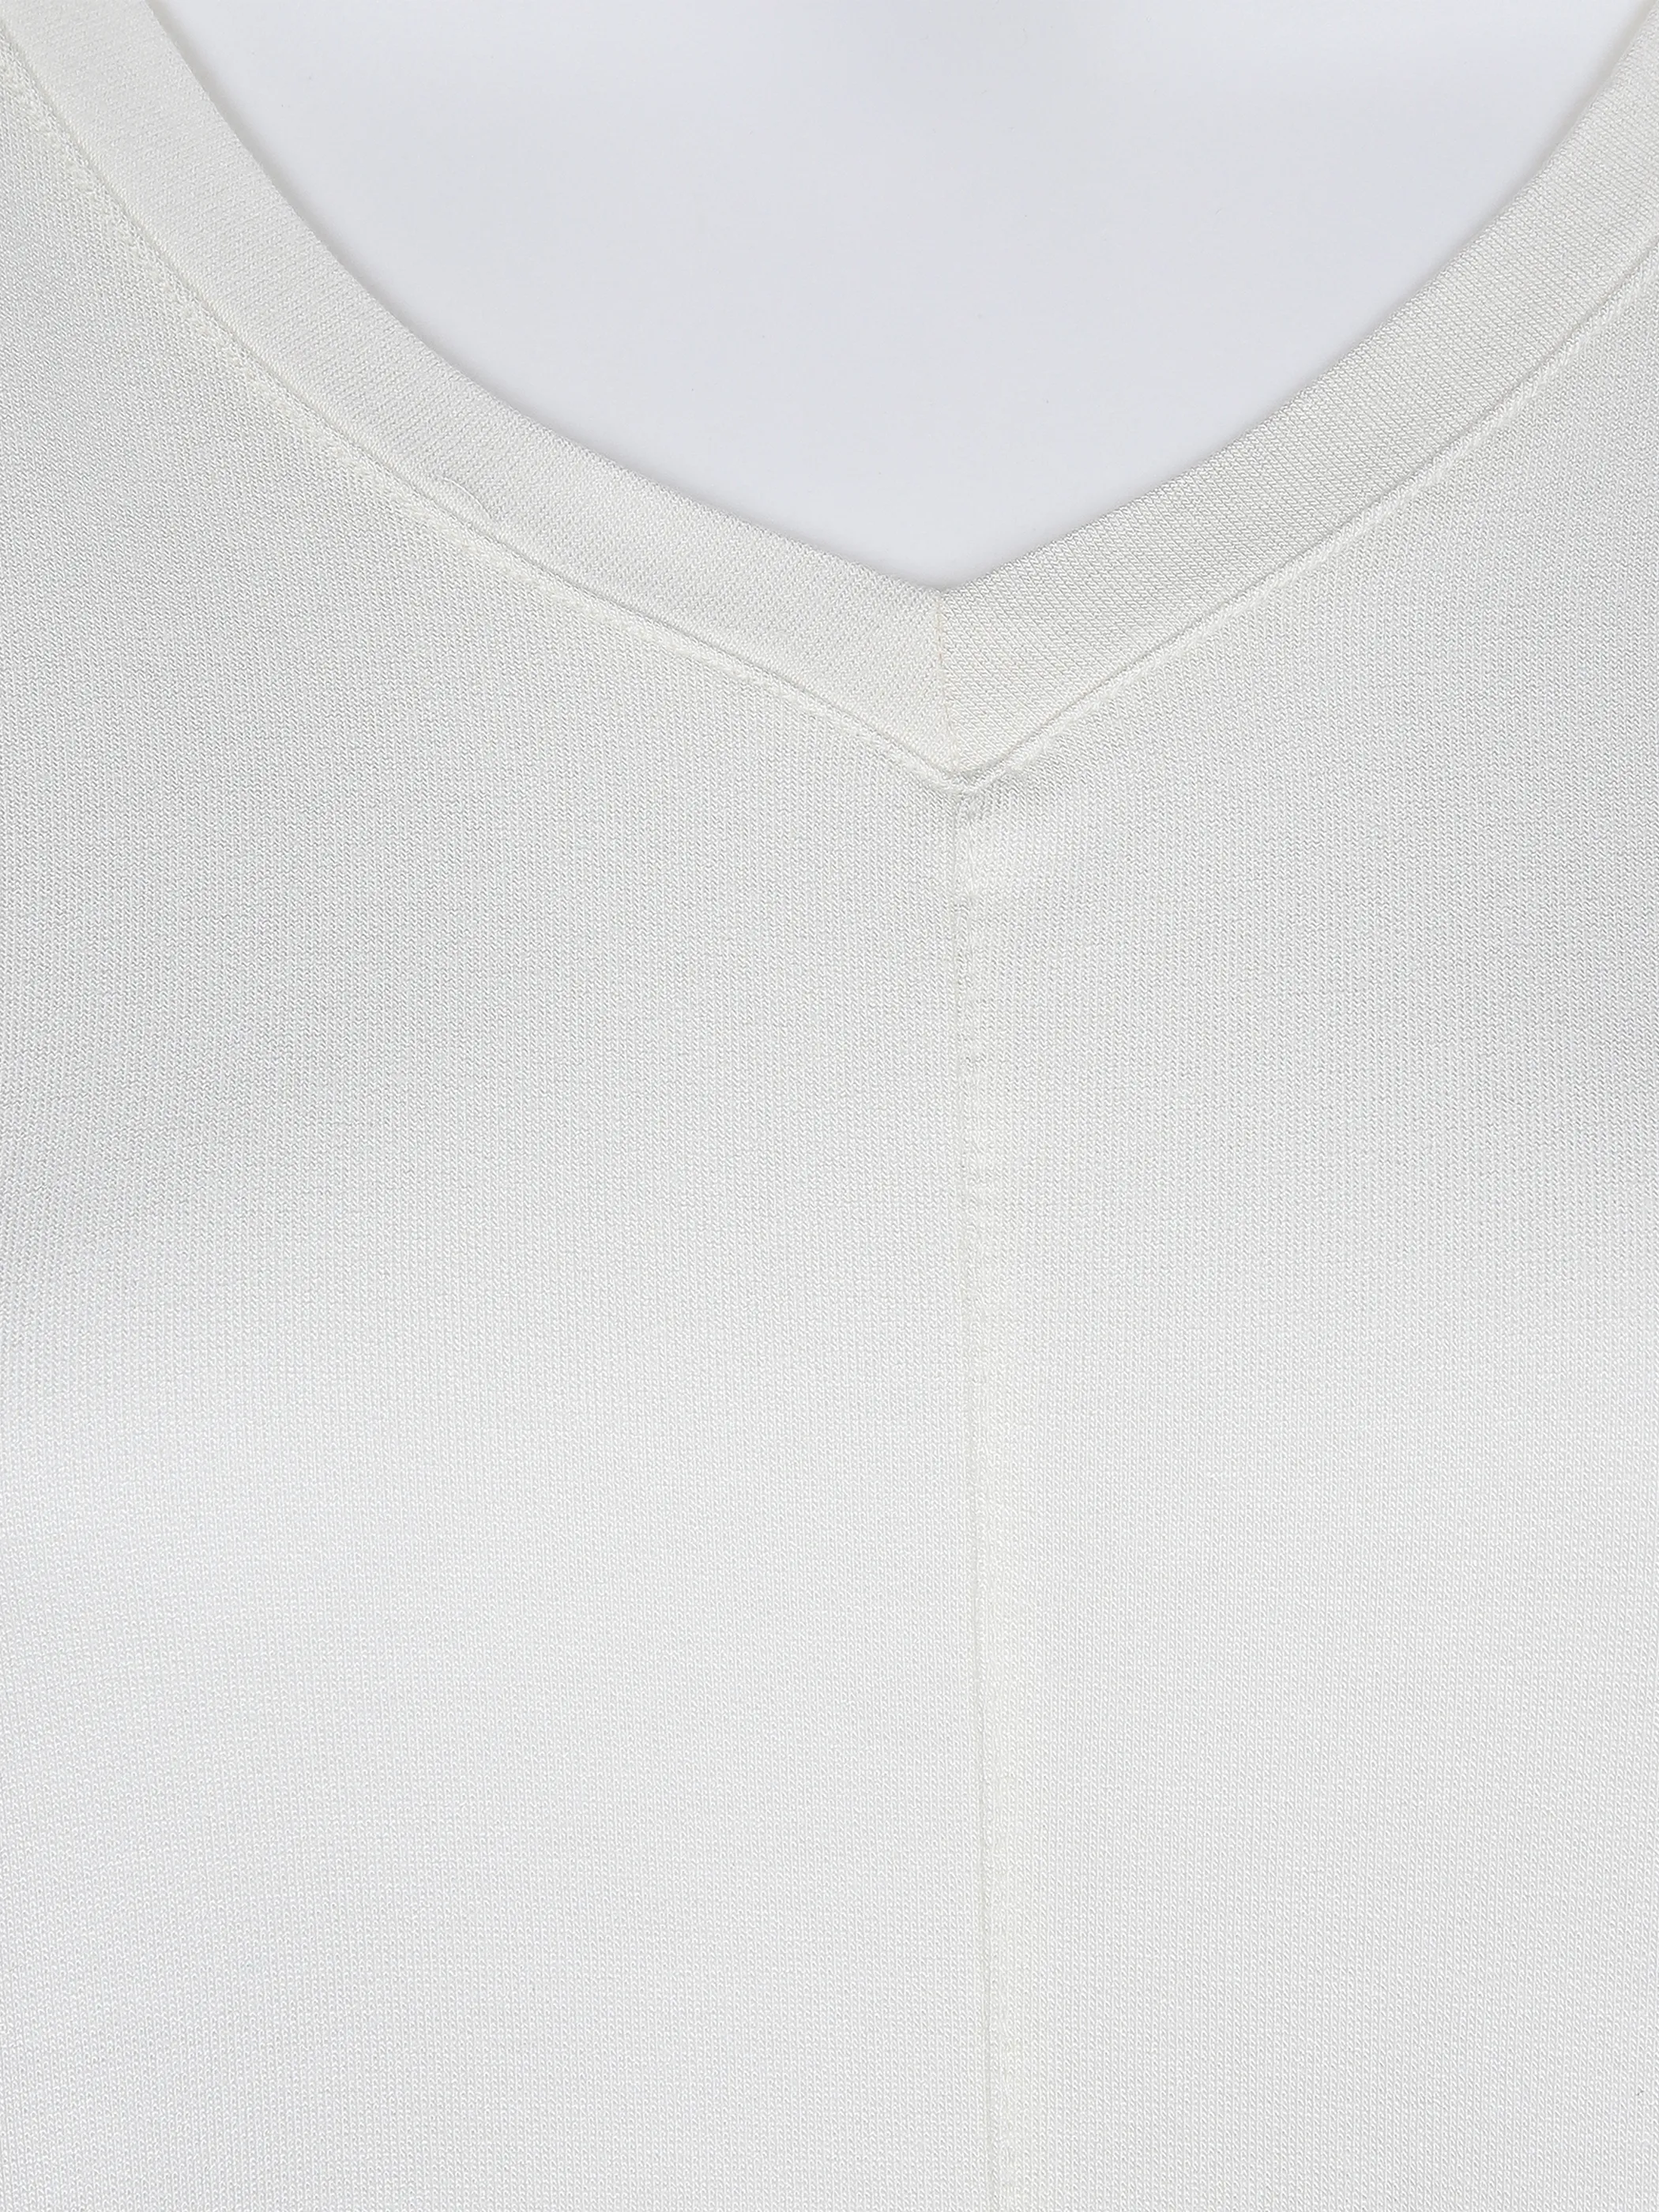 Lisa Tossa Da-T-Shirt m. V-Ausschnitt Weiß 866116 OFFWHITE 3